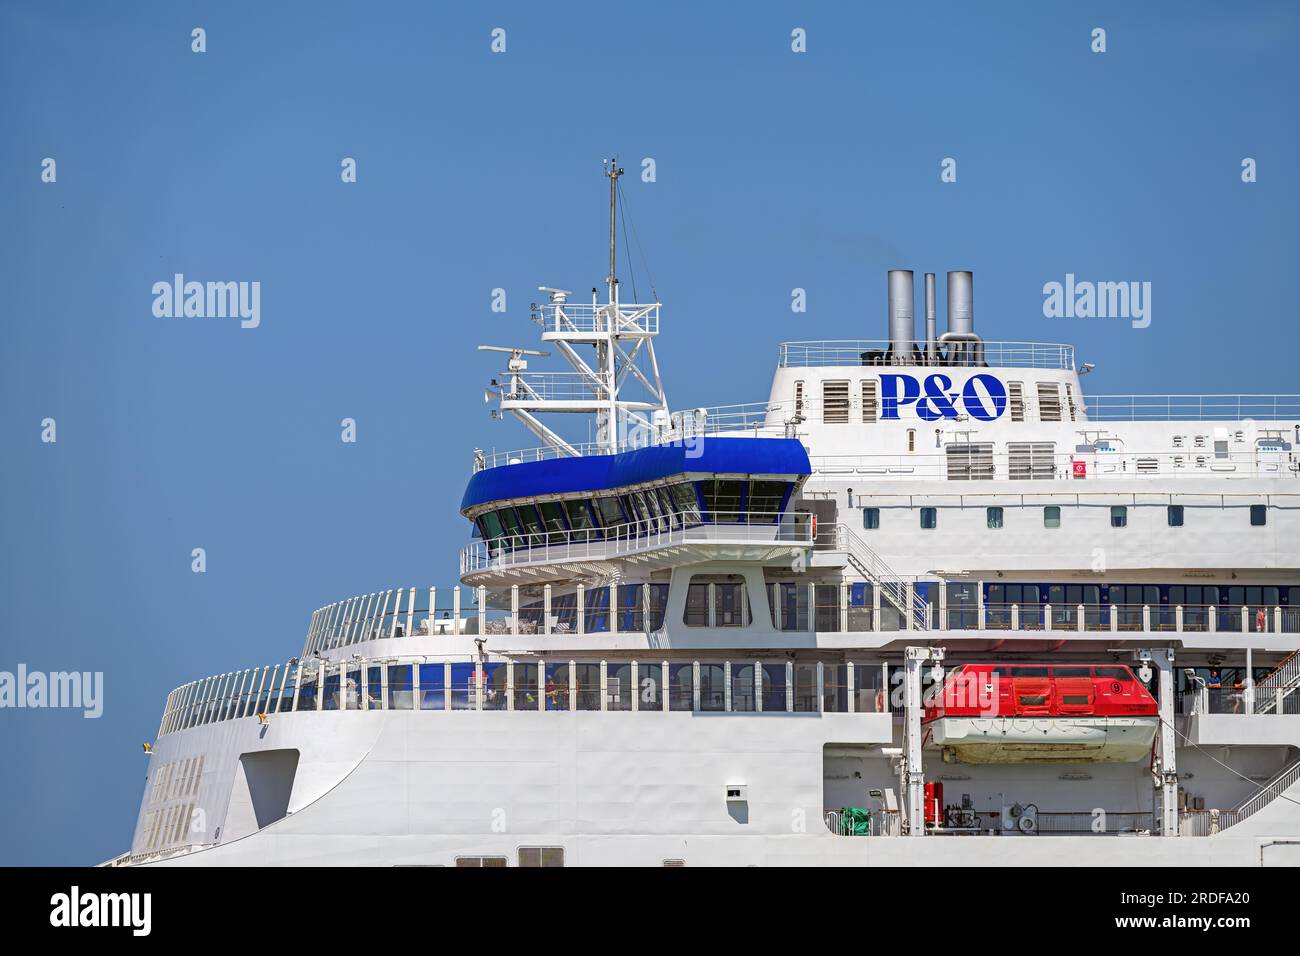 P&O Pioneer est un ferry transmanche à double extrémité exploité par P&O Ferries entre Douvres et Calais. Banque D'Images